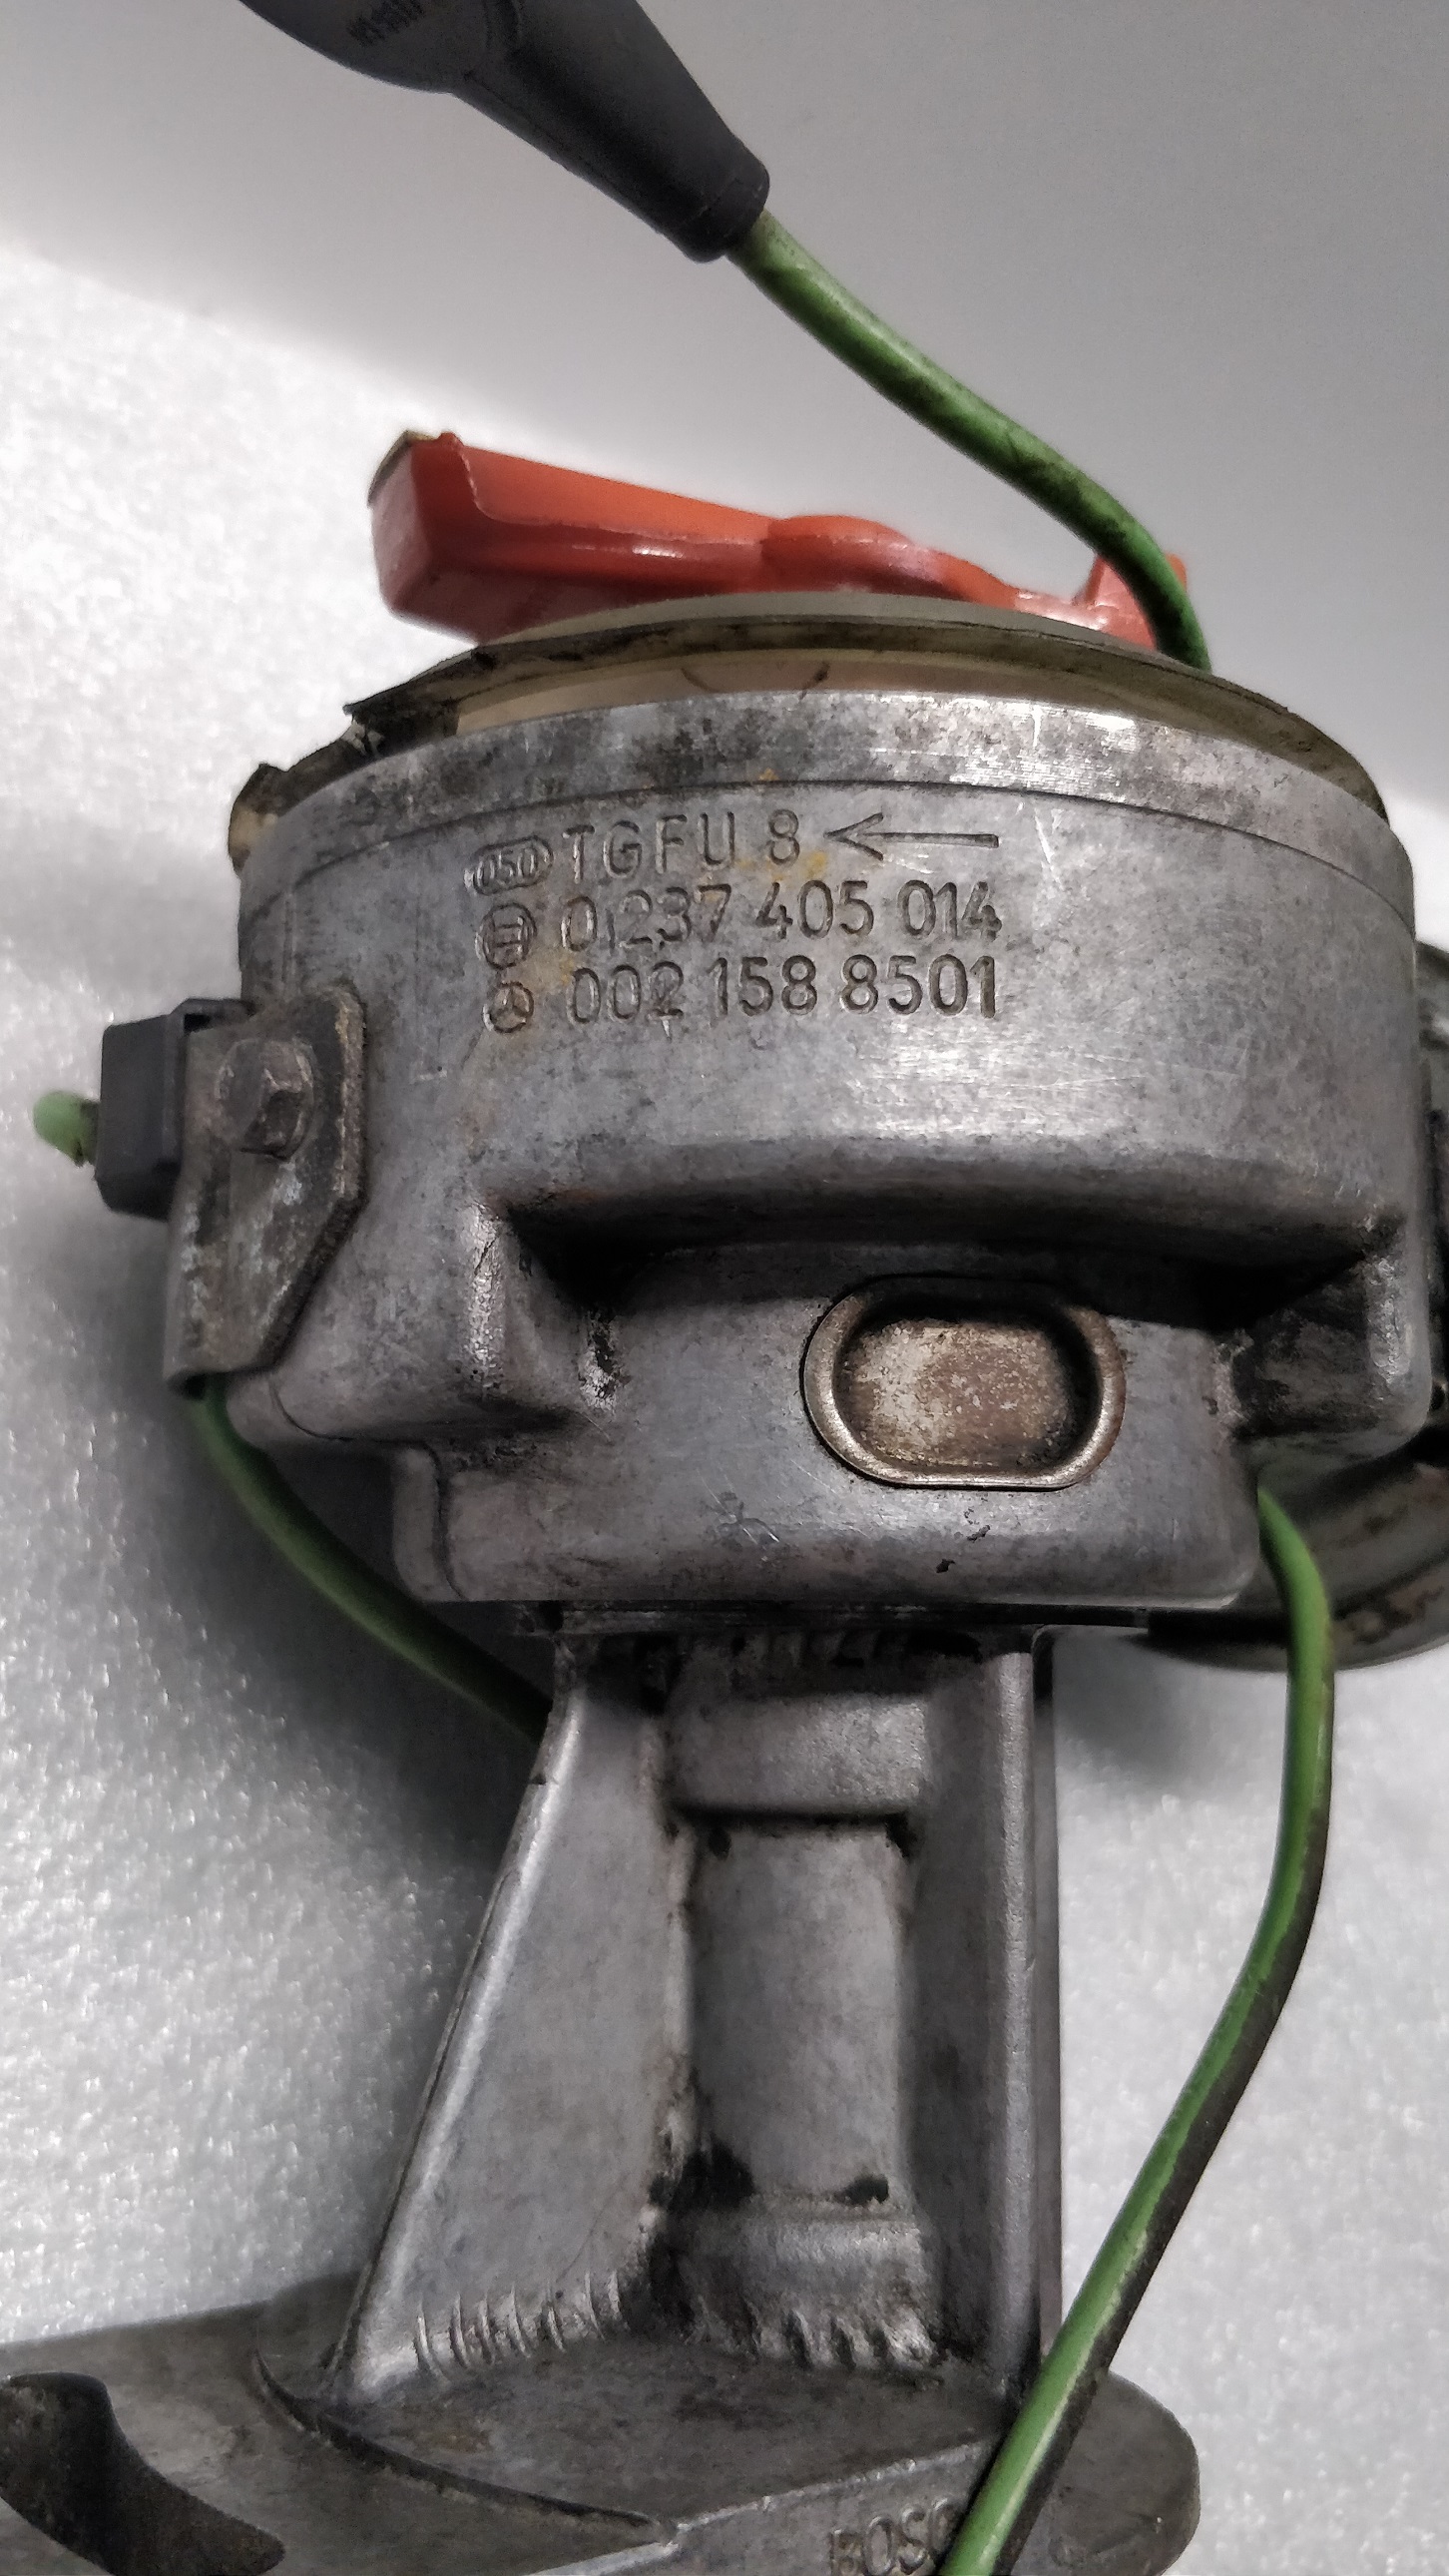 Distributor ignition Mercedes sl380 SLC R107 1981 0021588501 0237405014